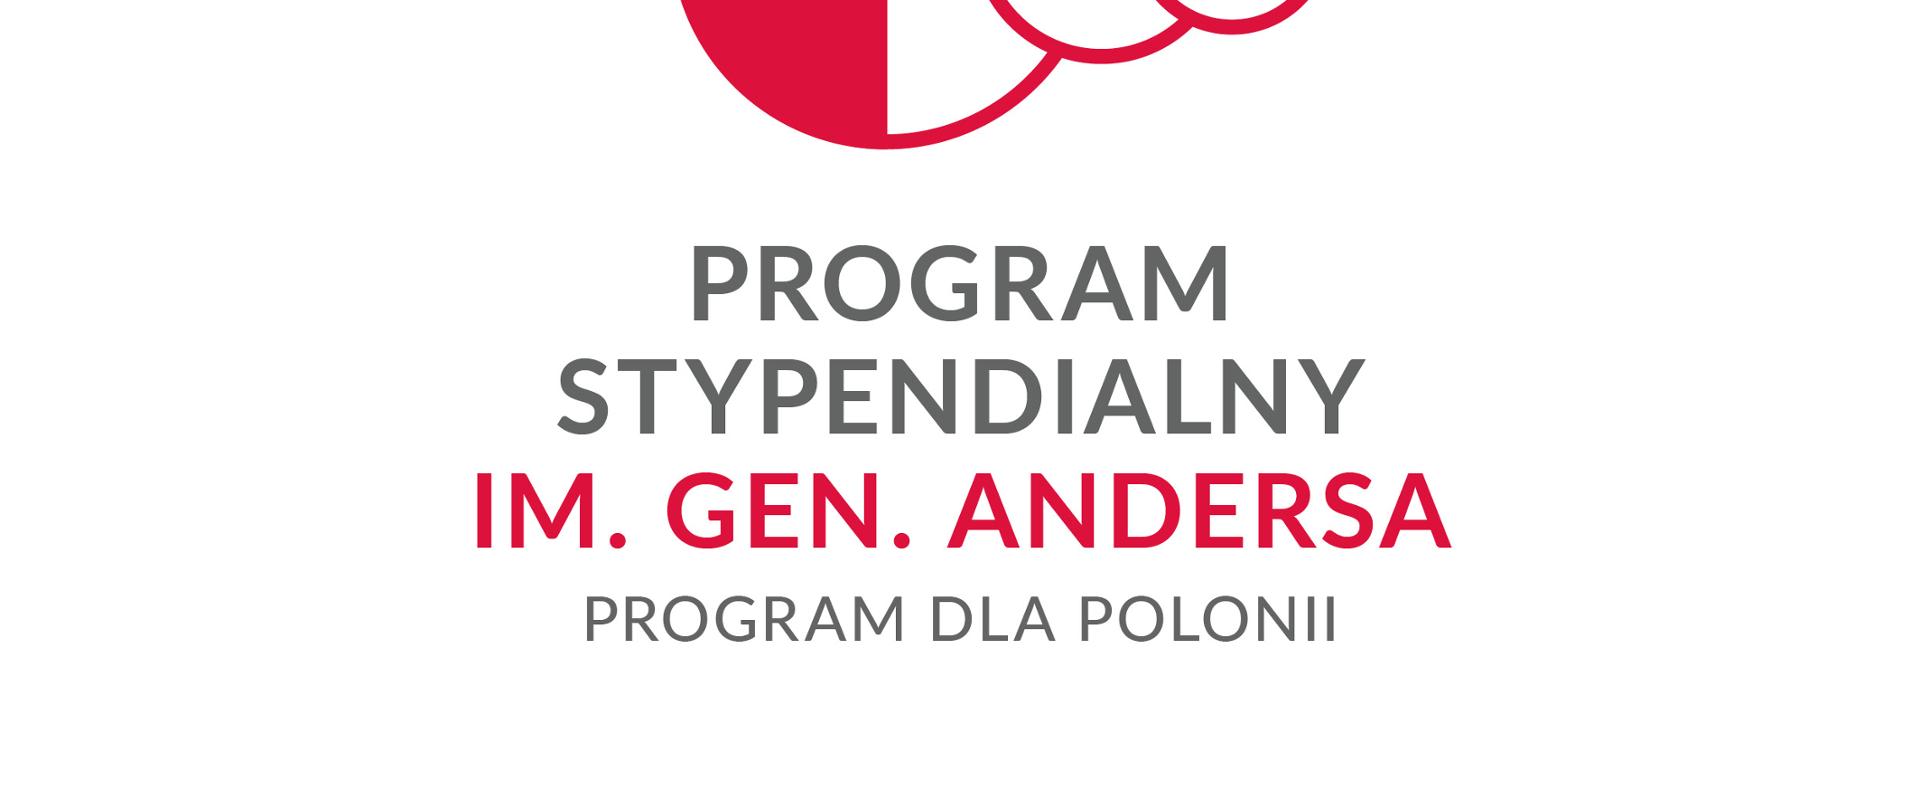 Program stypendialny dla Polonii im. gen. Władysława Andersa